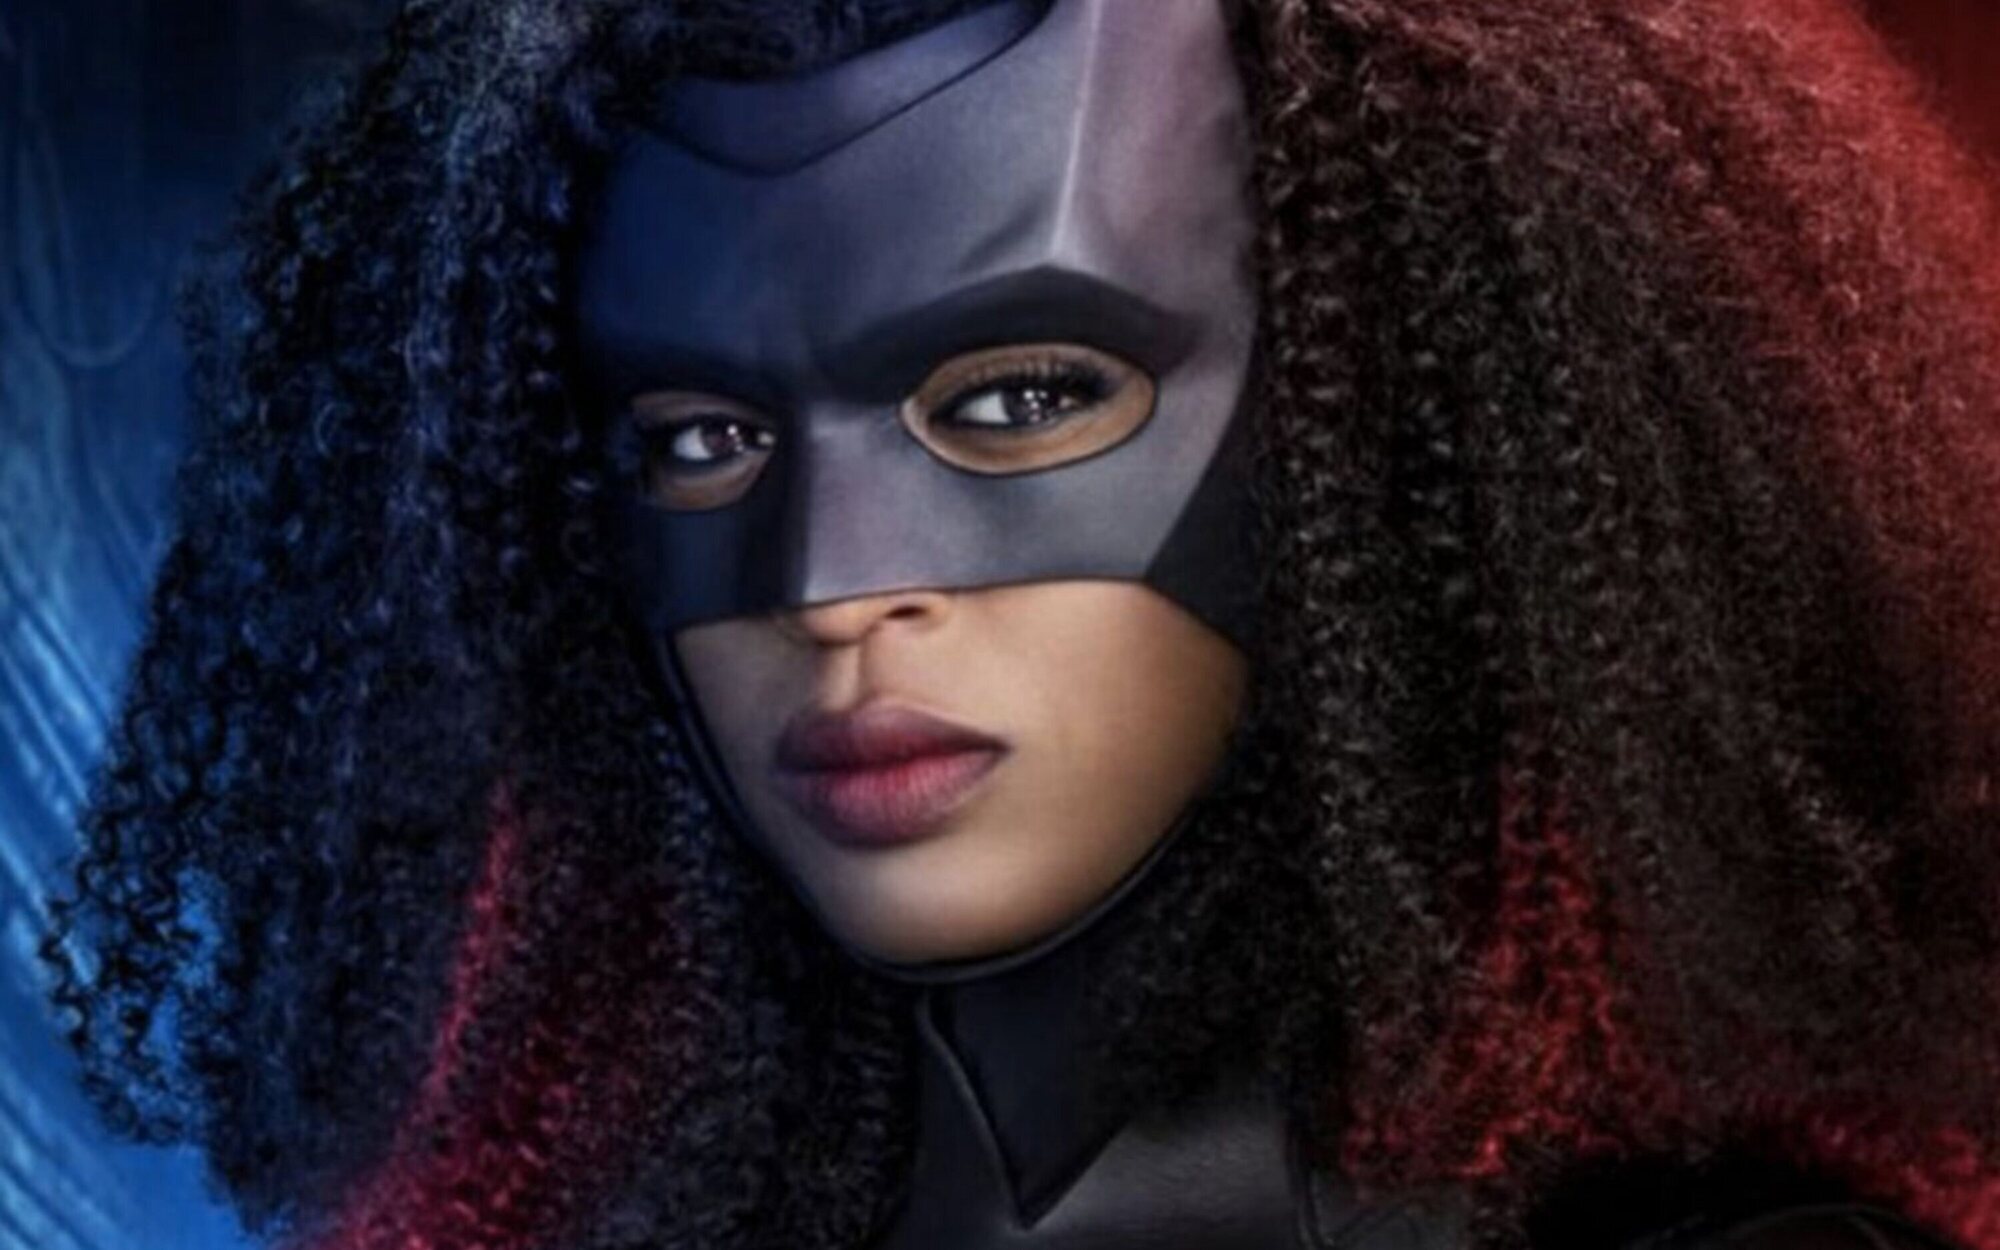 'Batwoman', cancelada tras tres temporadas